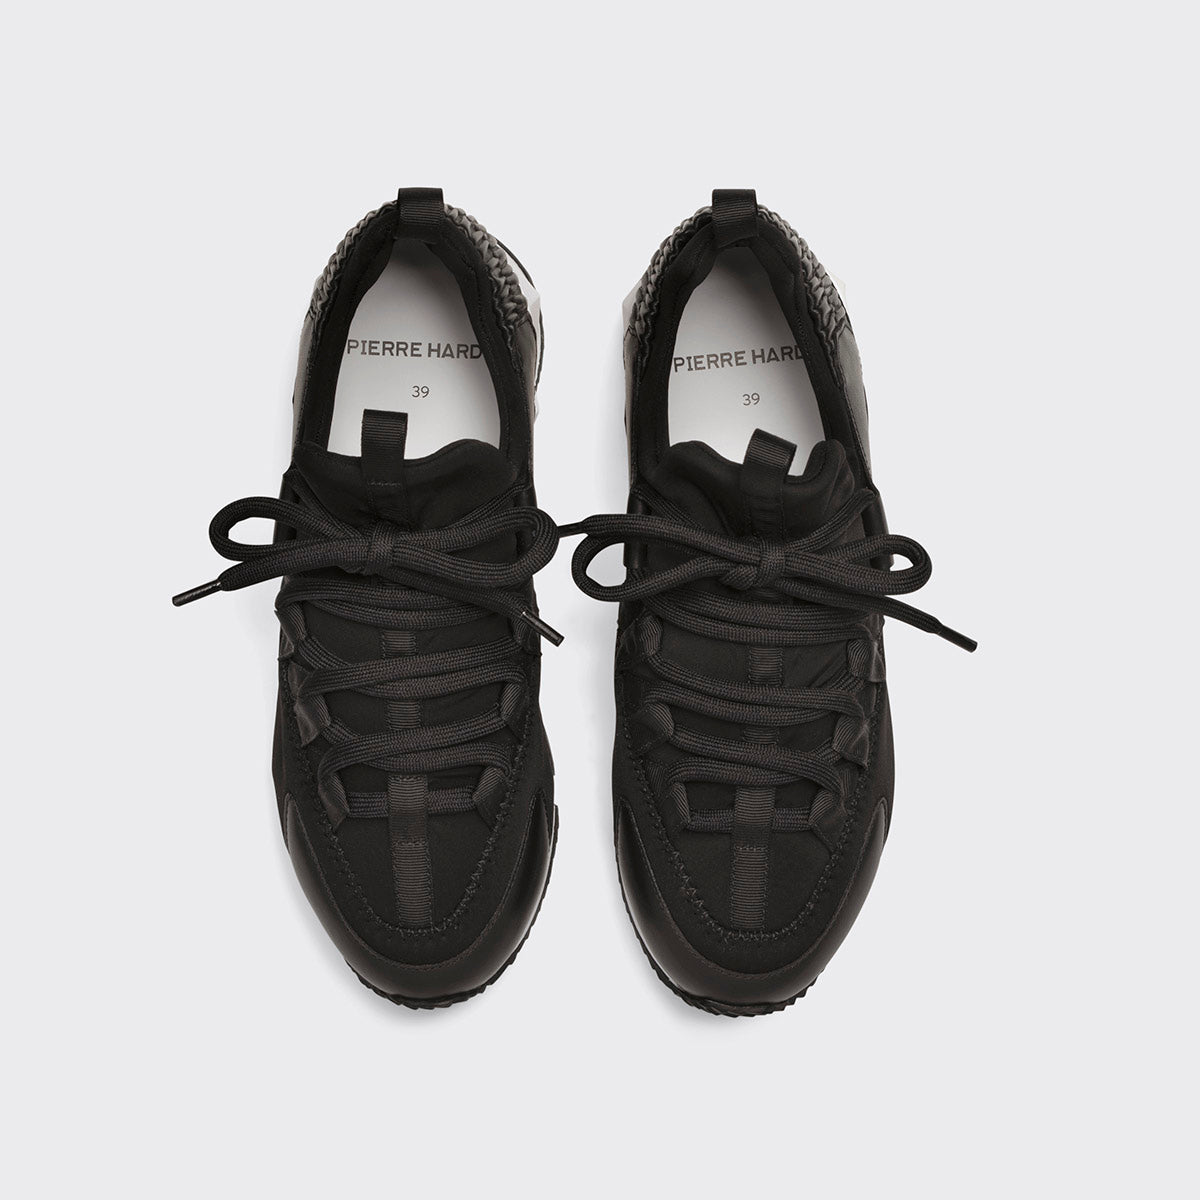 TREK COMET women's sneakers in black neoprene u0026 leather — PIERRE HARDY